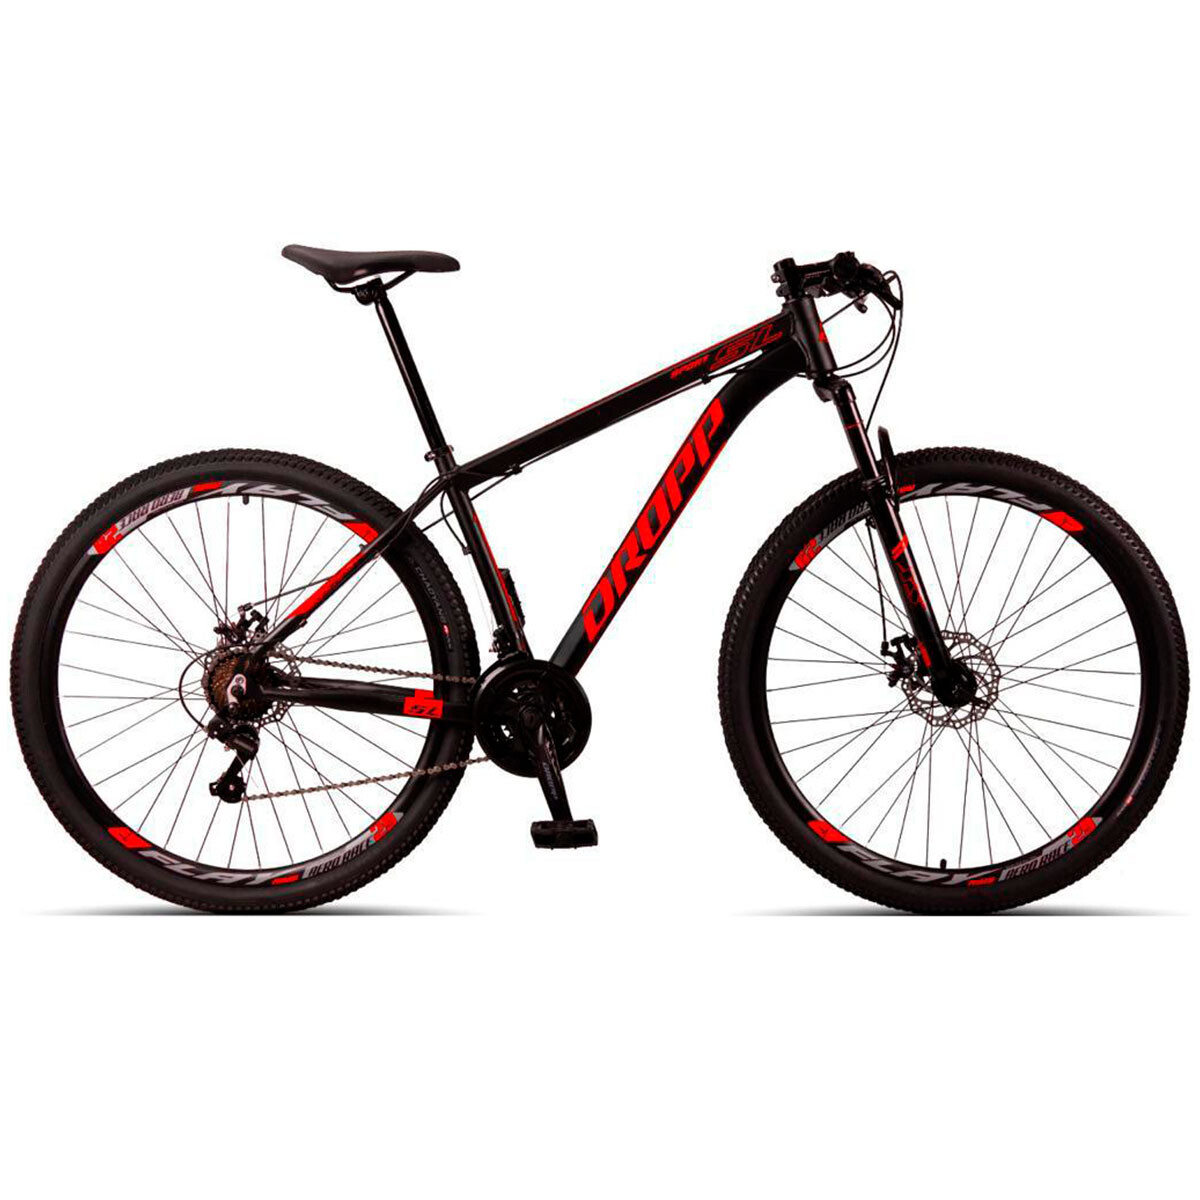 Bicicleta Montaña Dropp Rodado 29 Aluminio Cambios Shimano - Negro Rojo 